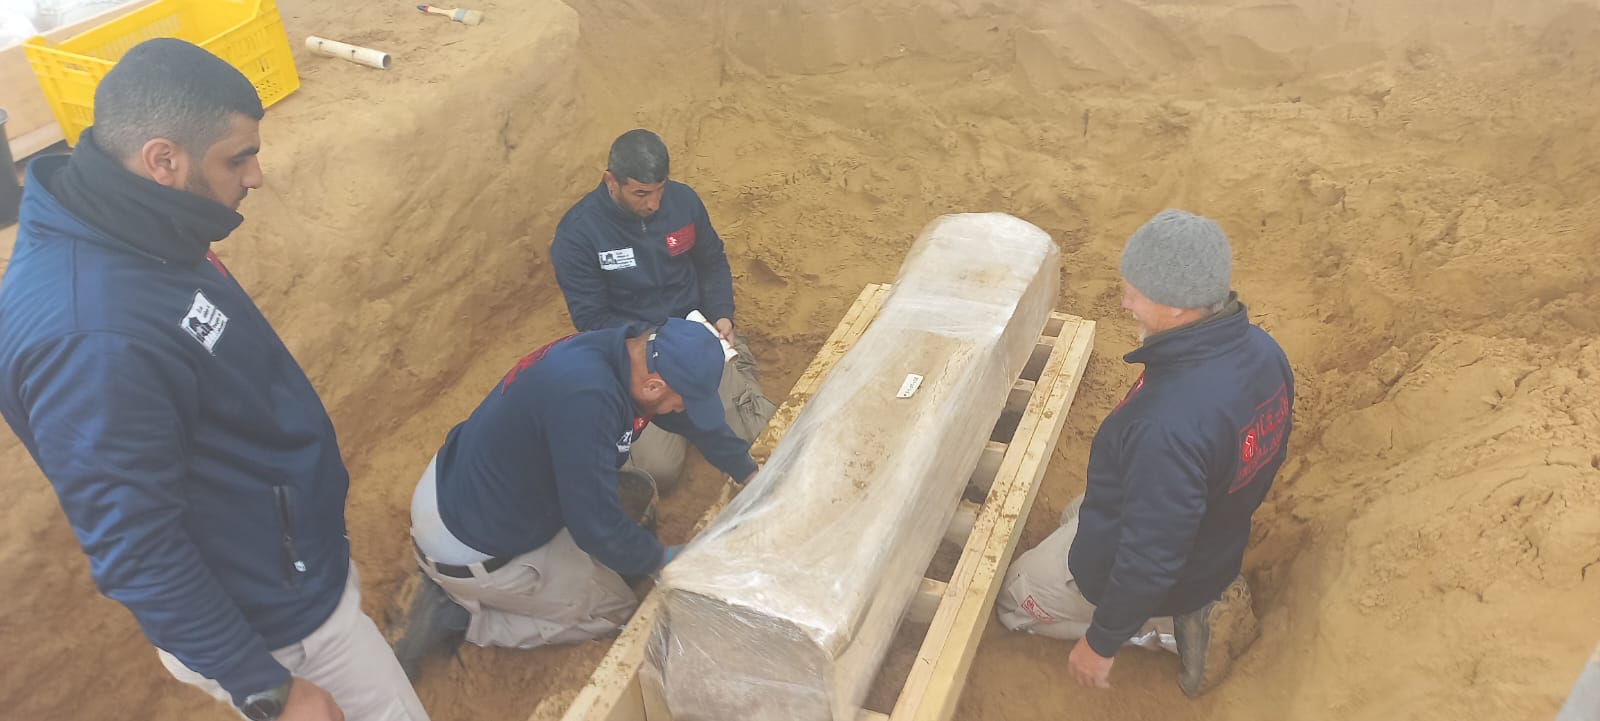 اكتشاف تابوت رصاصي في المقبرة الرومانية شمال غزة